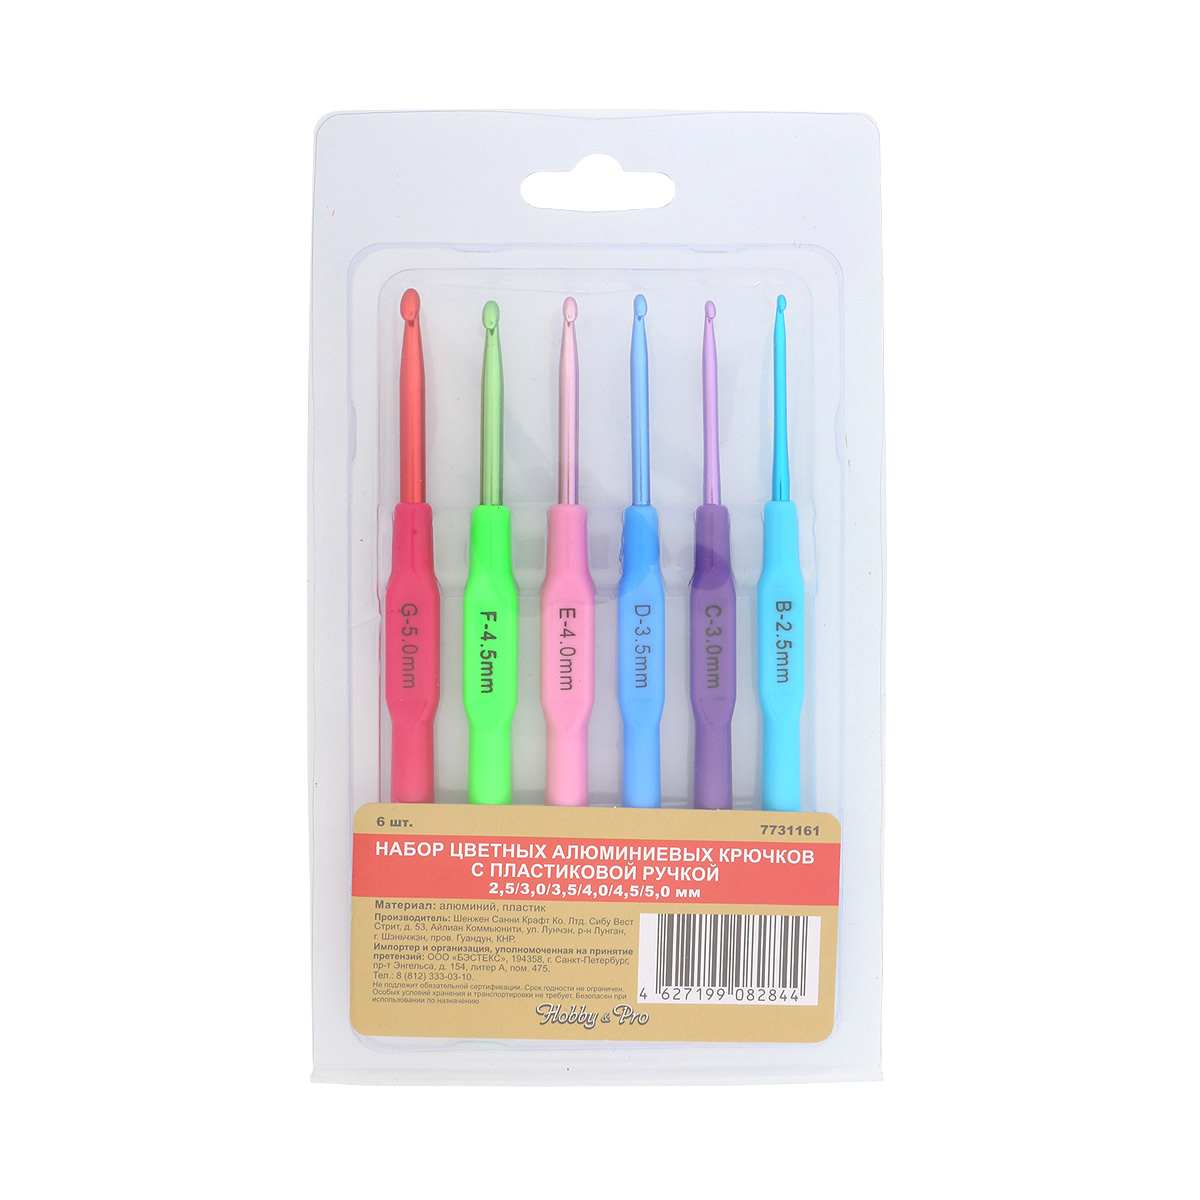 Набор цветных алюминиевых крючков Hobby&Pro 1287, с пластиковой ручкой 2,5-5 мм, 6 шт